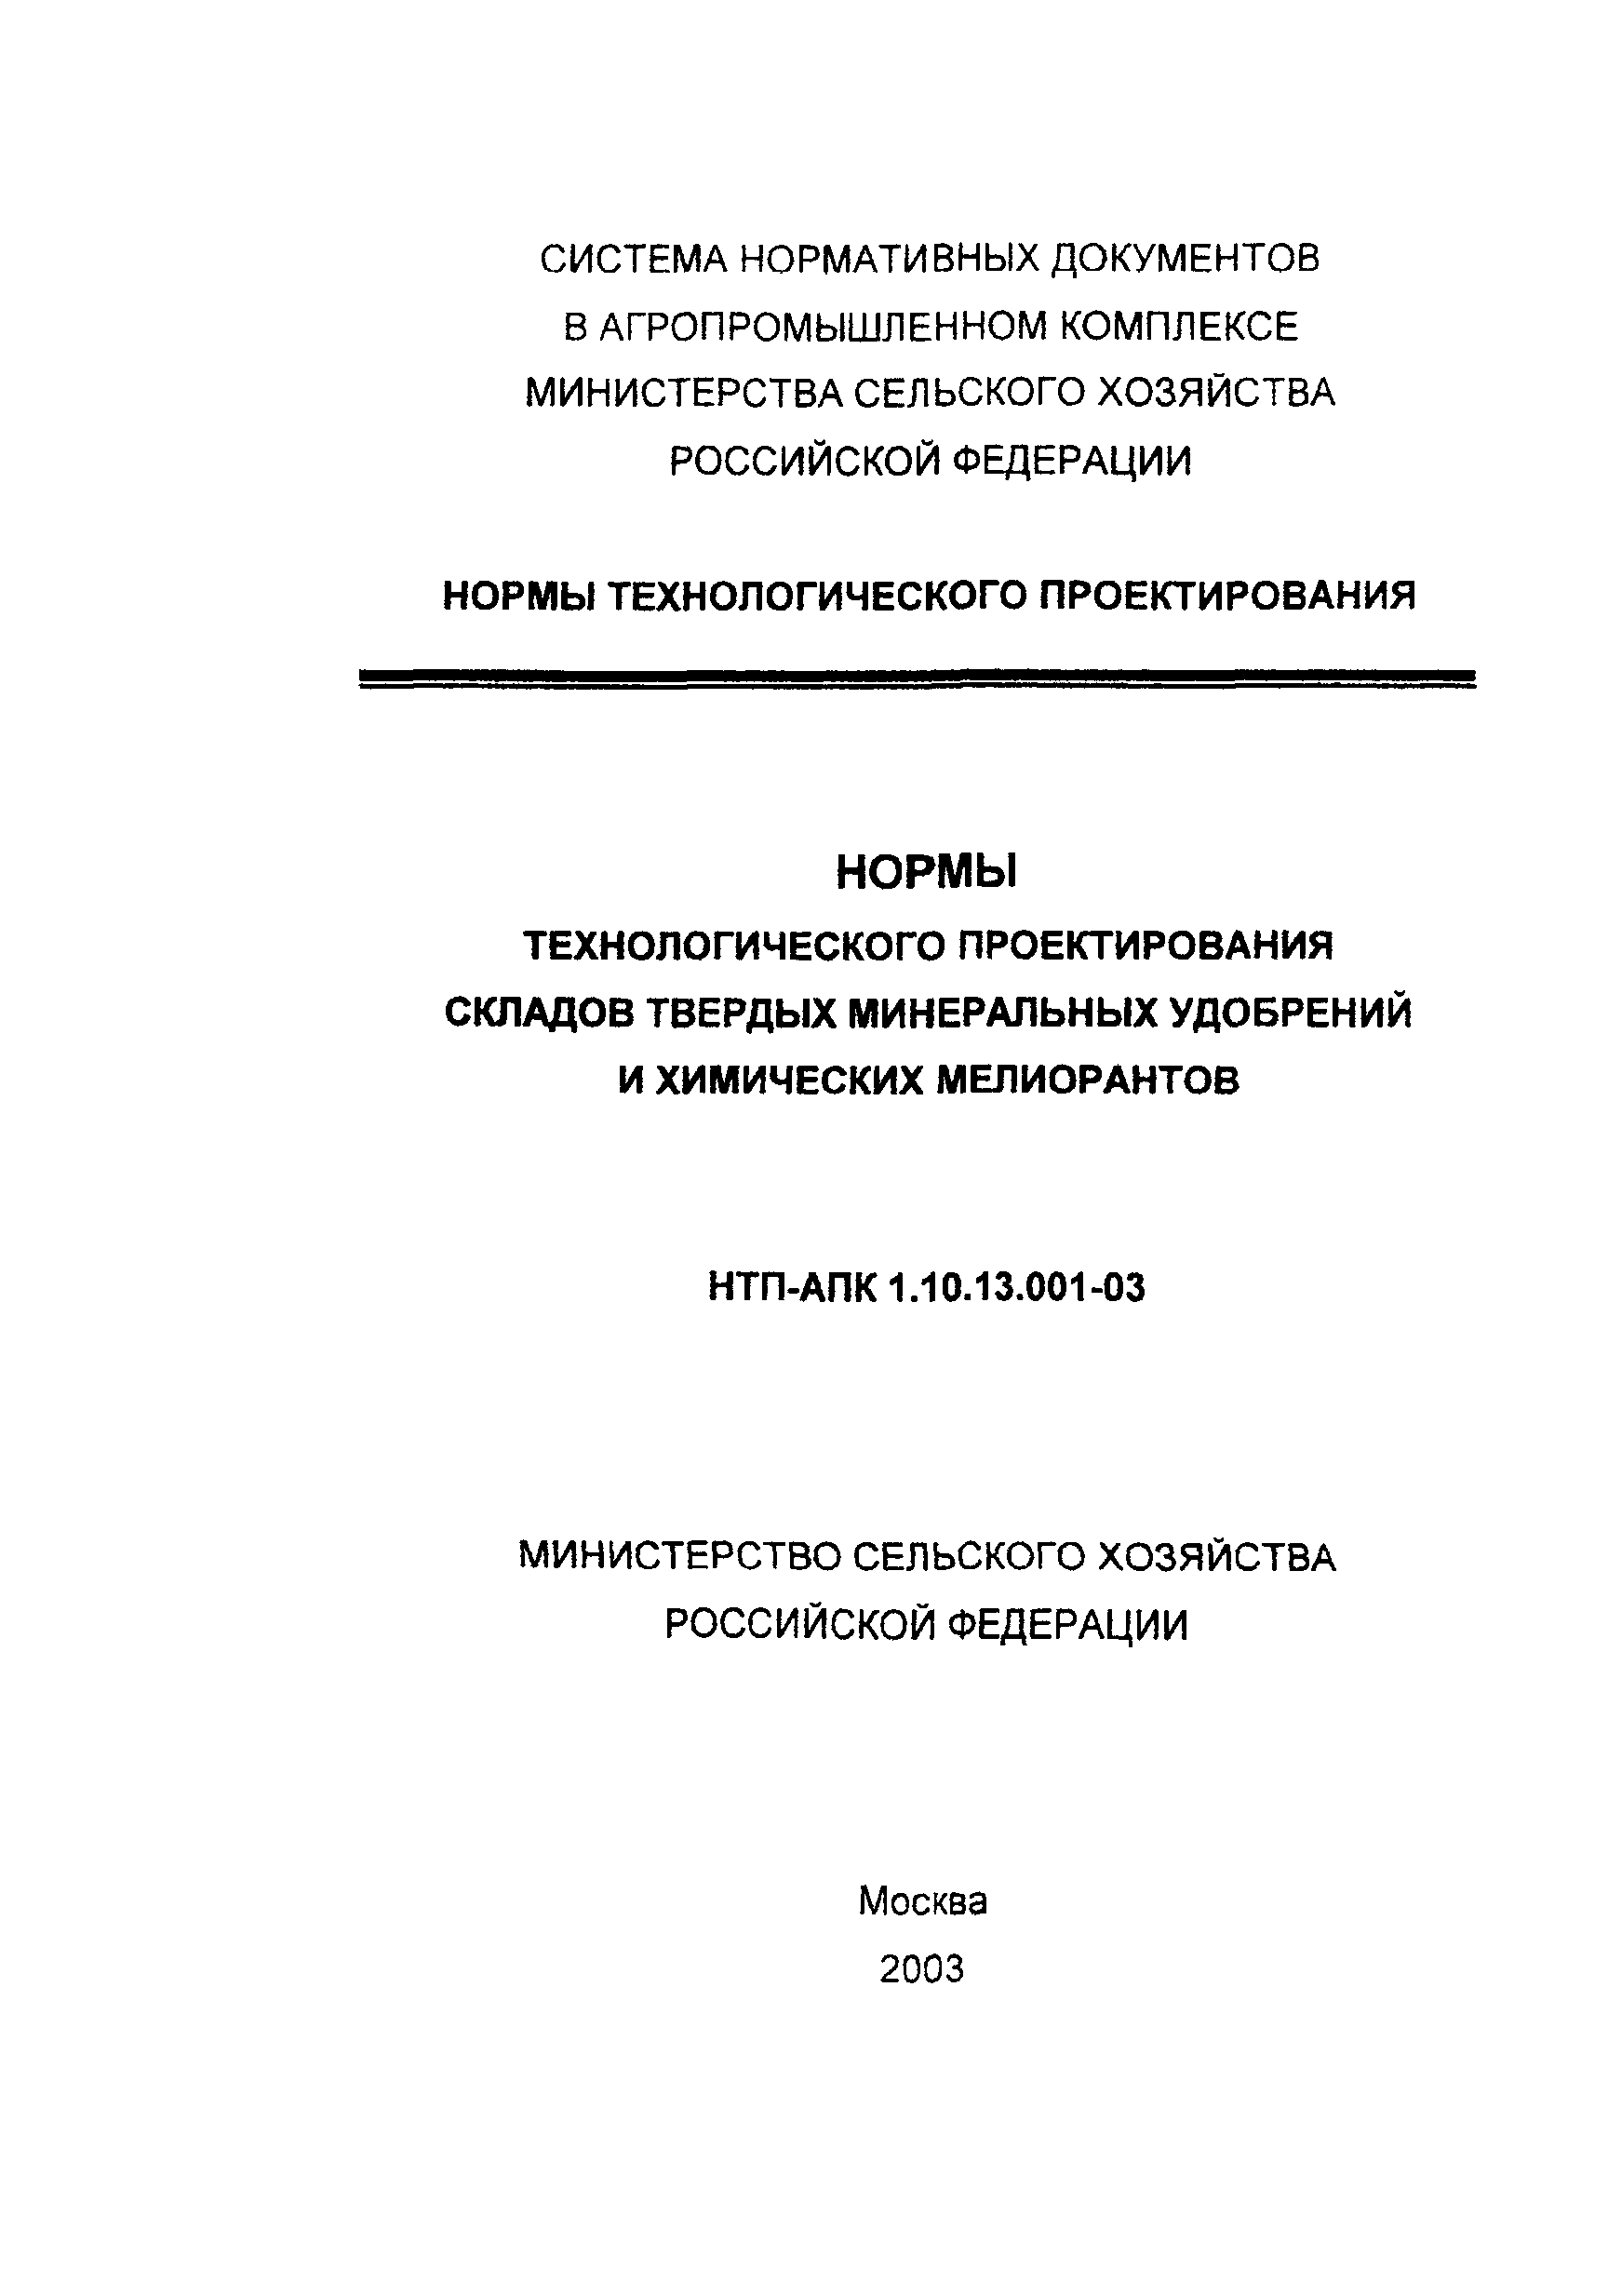 НТП-АПК 1.10.13.001-03